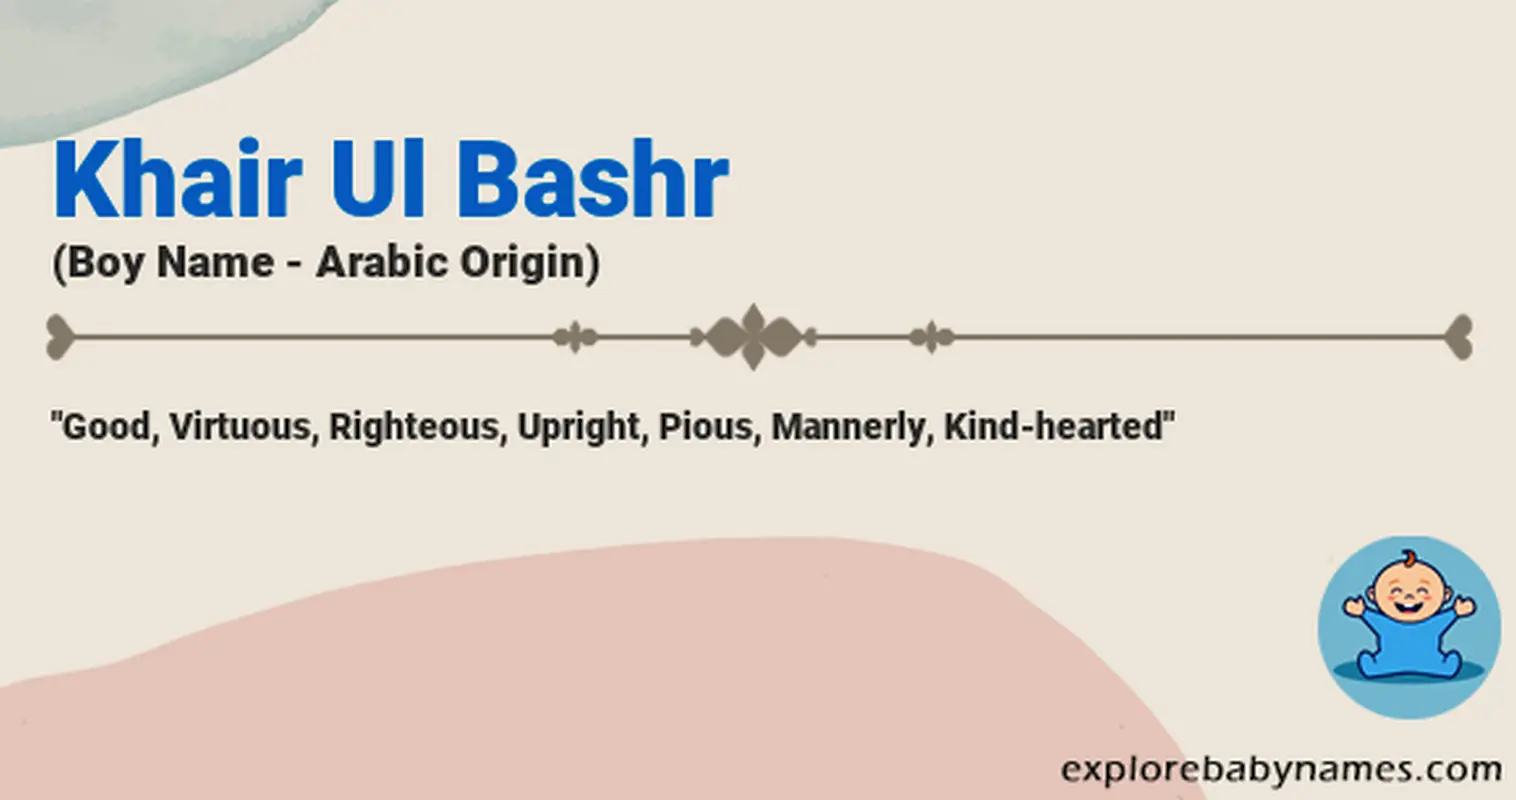 Meaning of Khair Ul Bashr